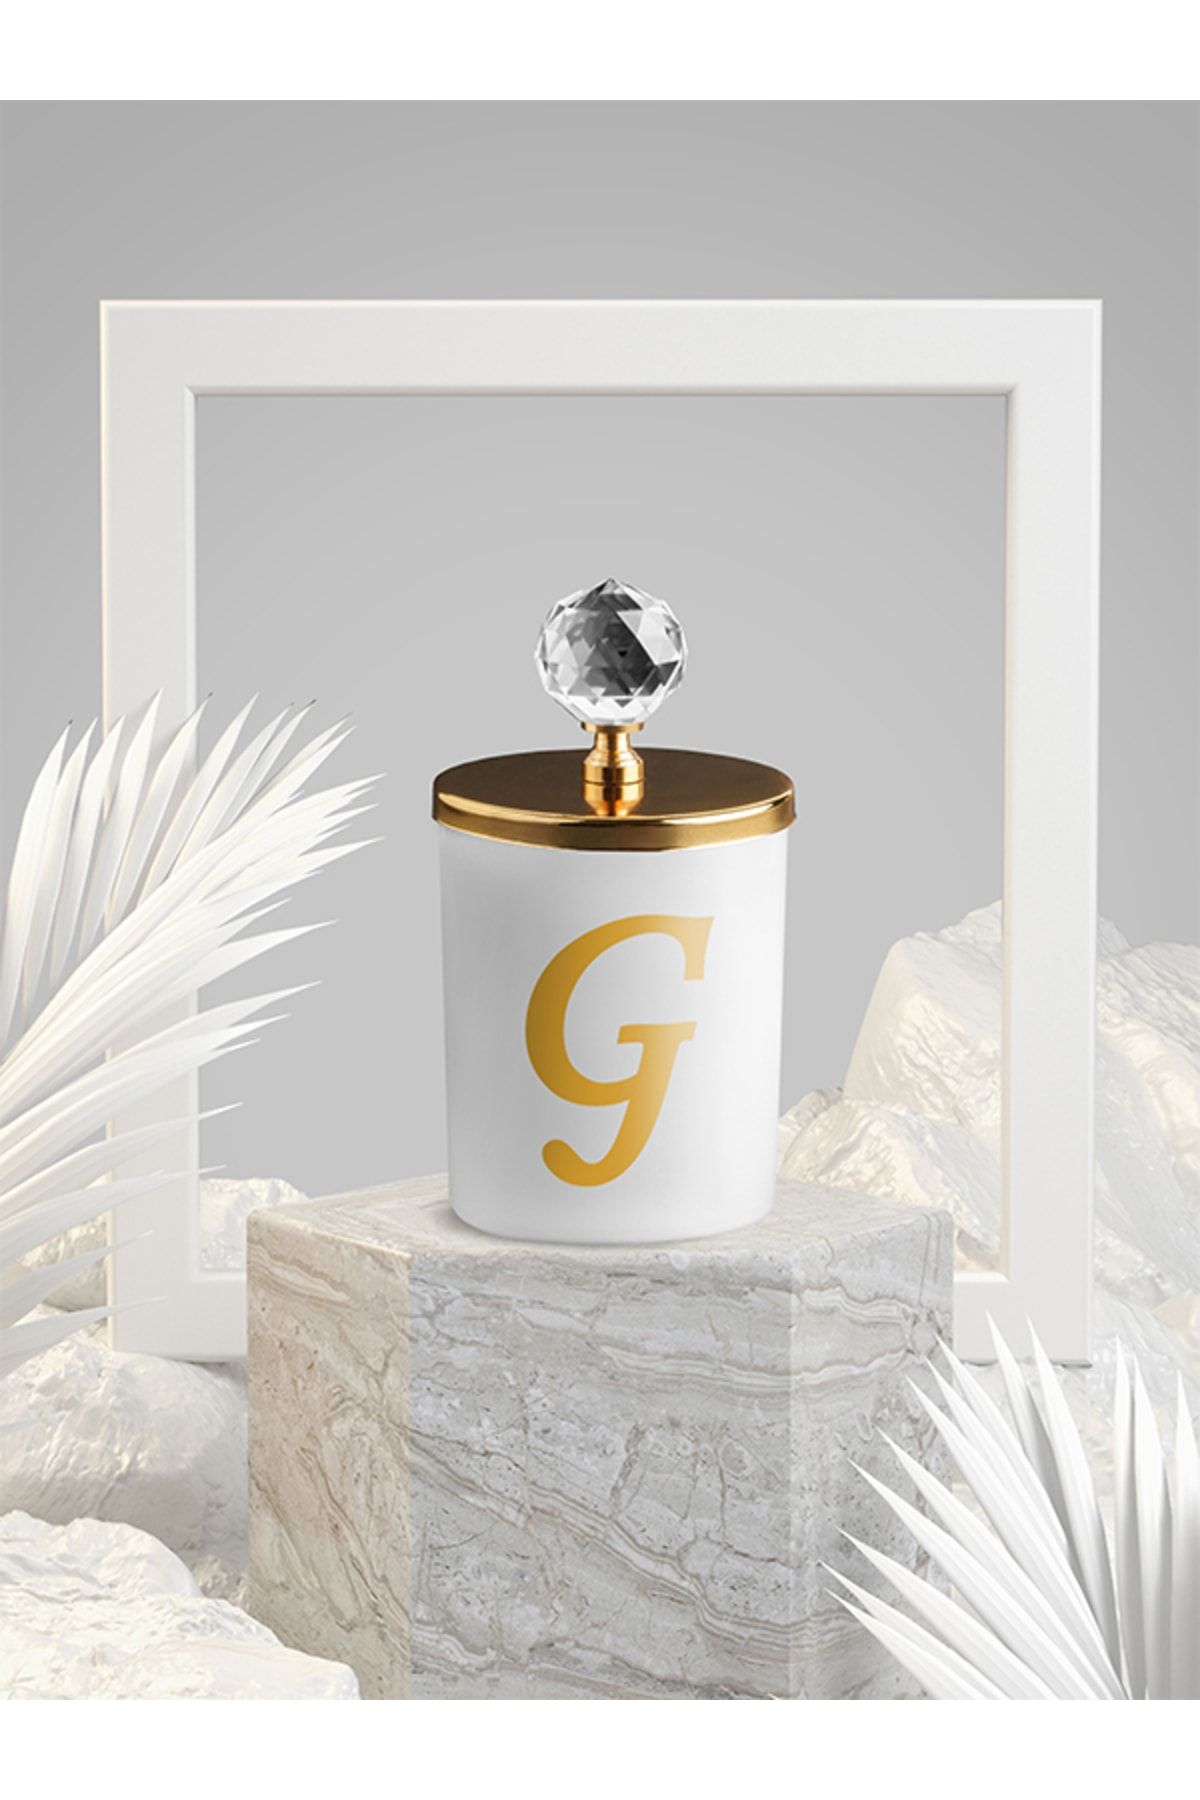 Tiem Concept Özel Tasarım G Harfli Vanilya Kokulu Gold Kristal Tepelikli Beyaz Bardak Mum